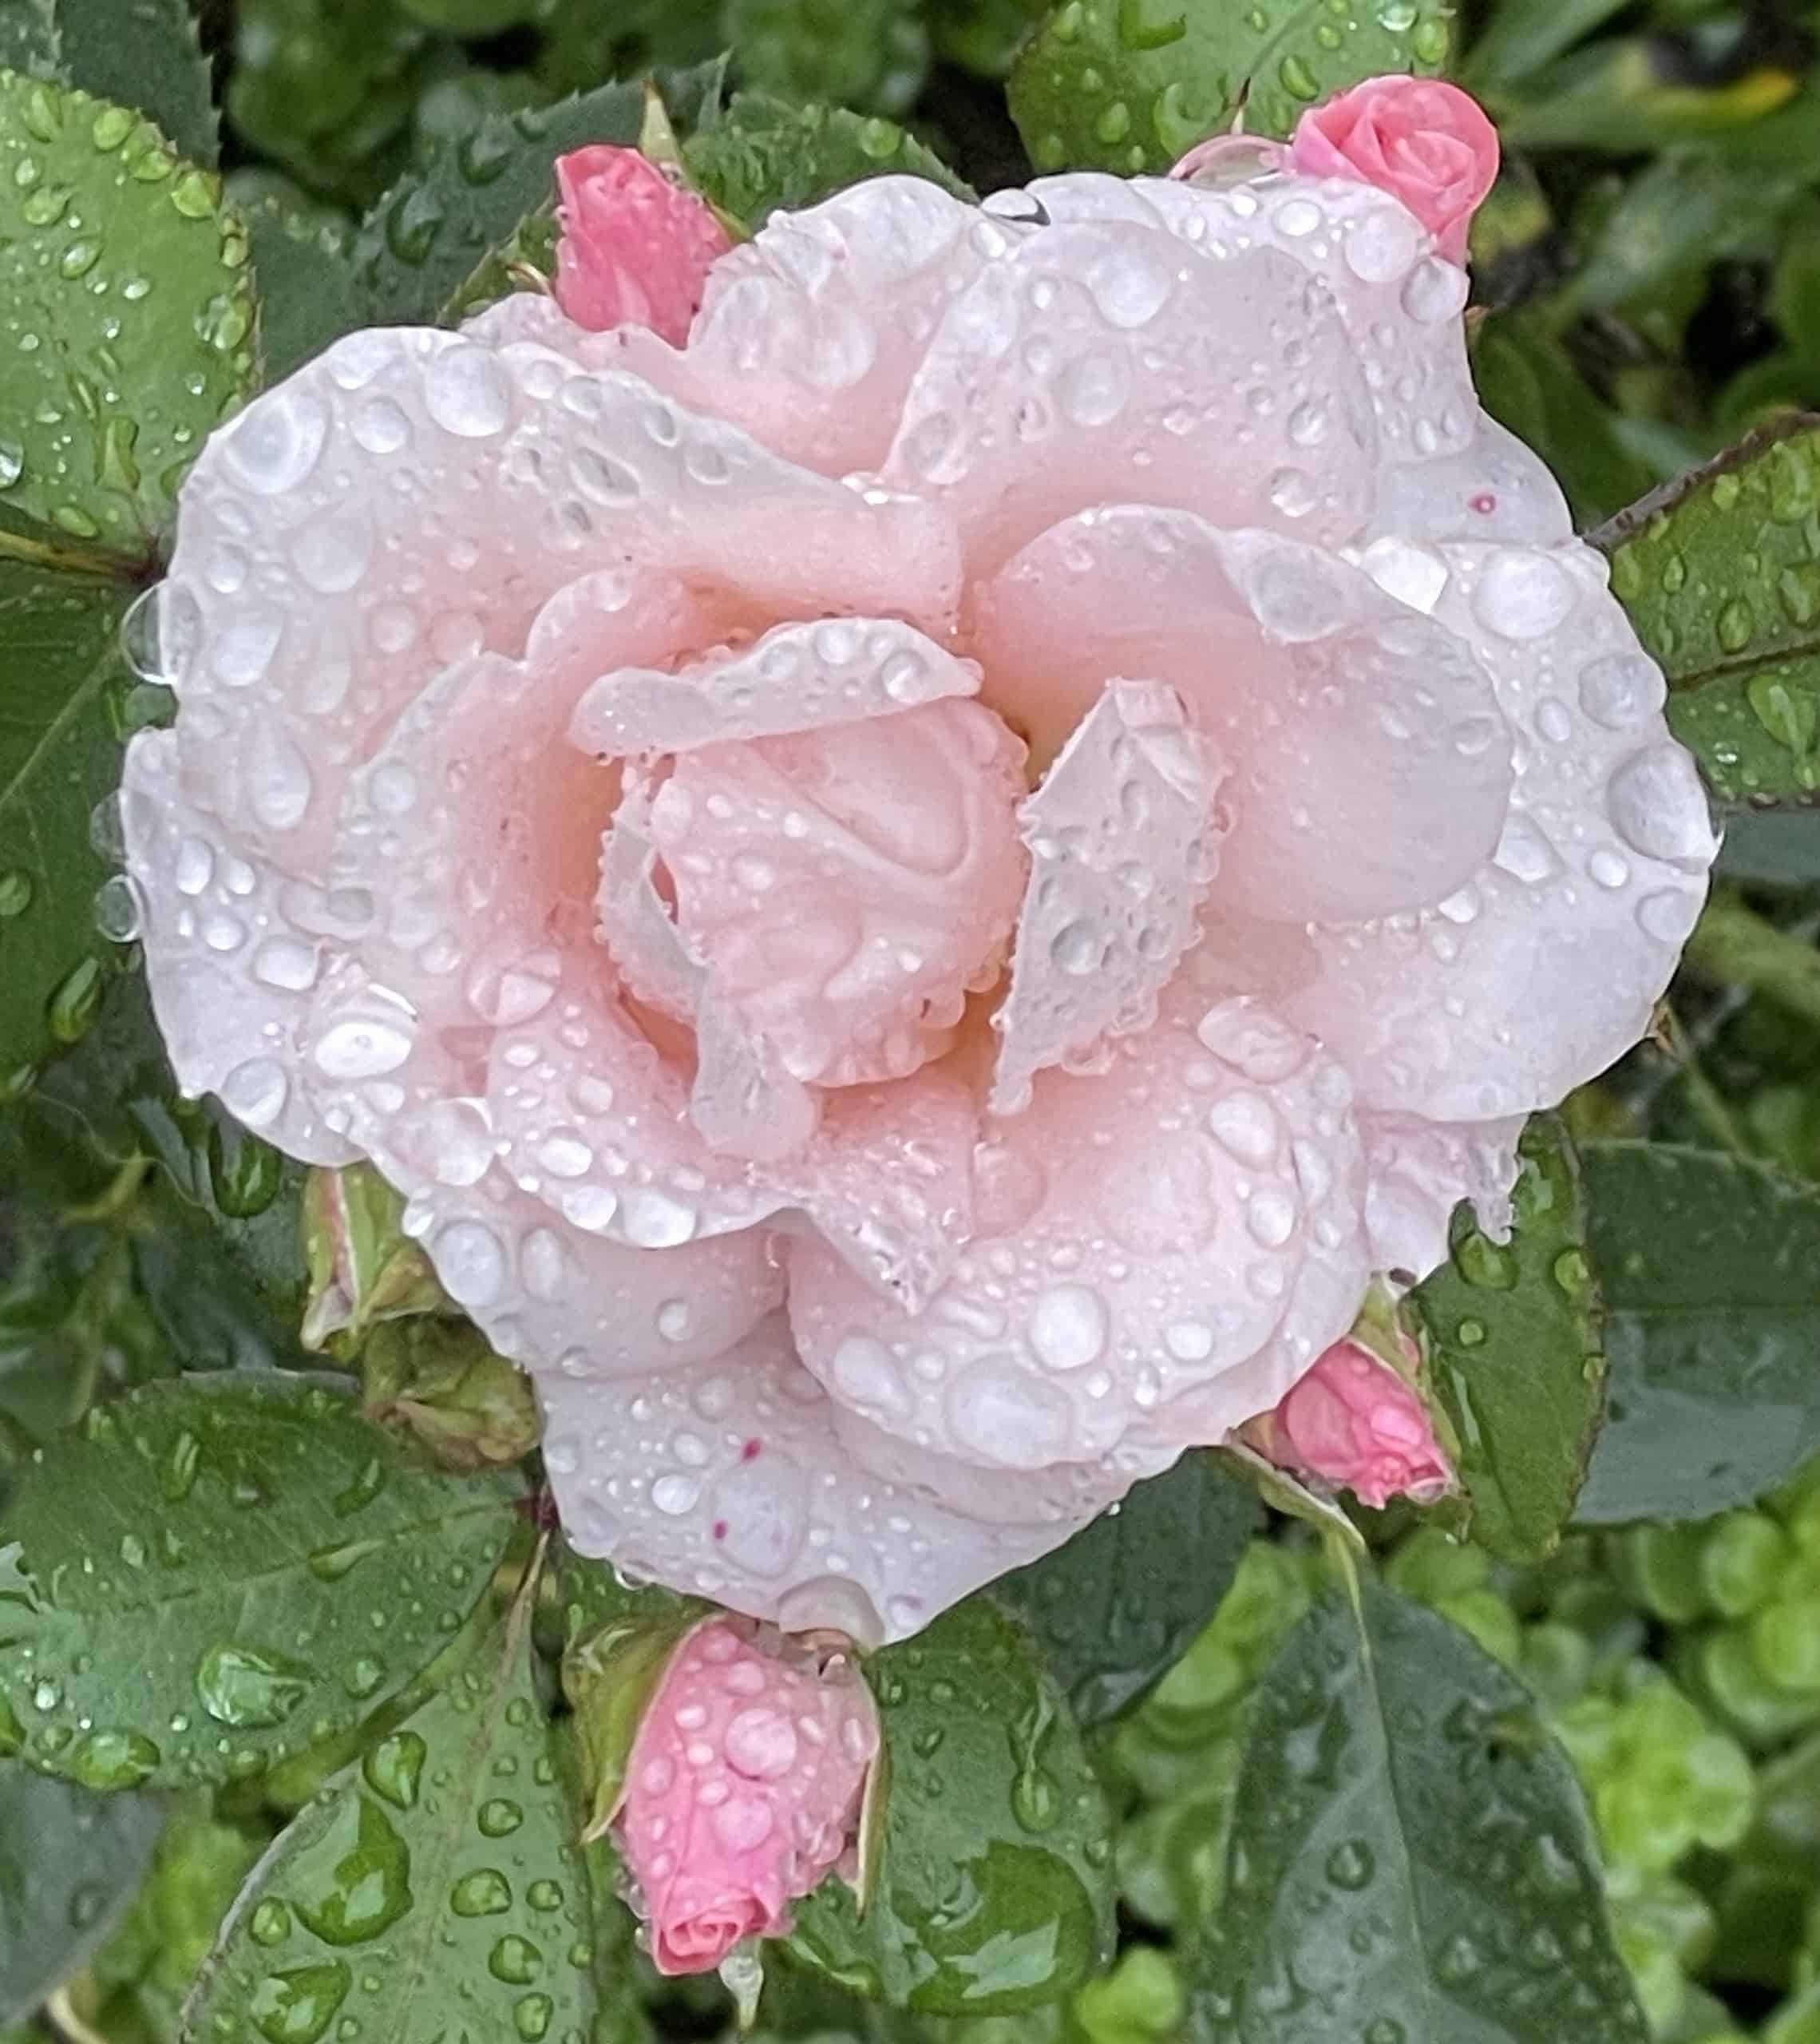 Eine rosa Rose übersäet mit Regentropfen.